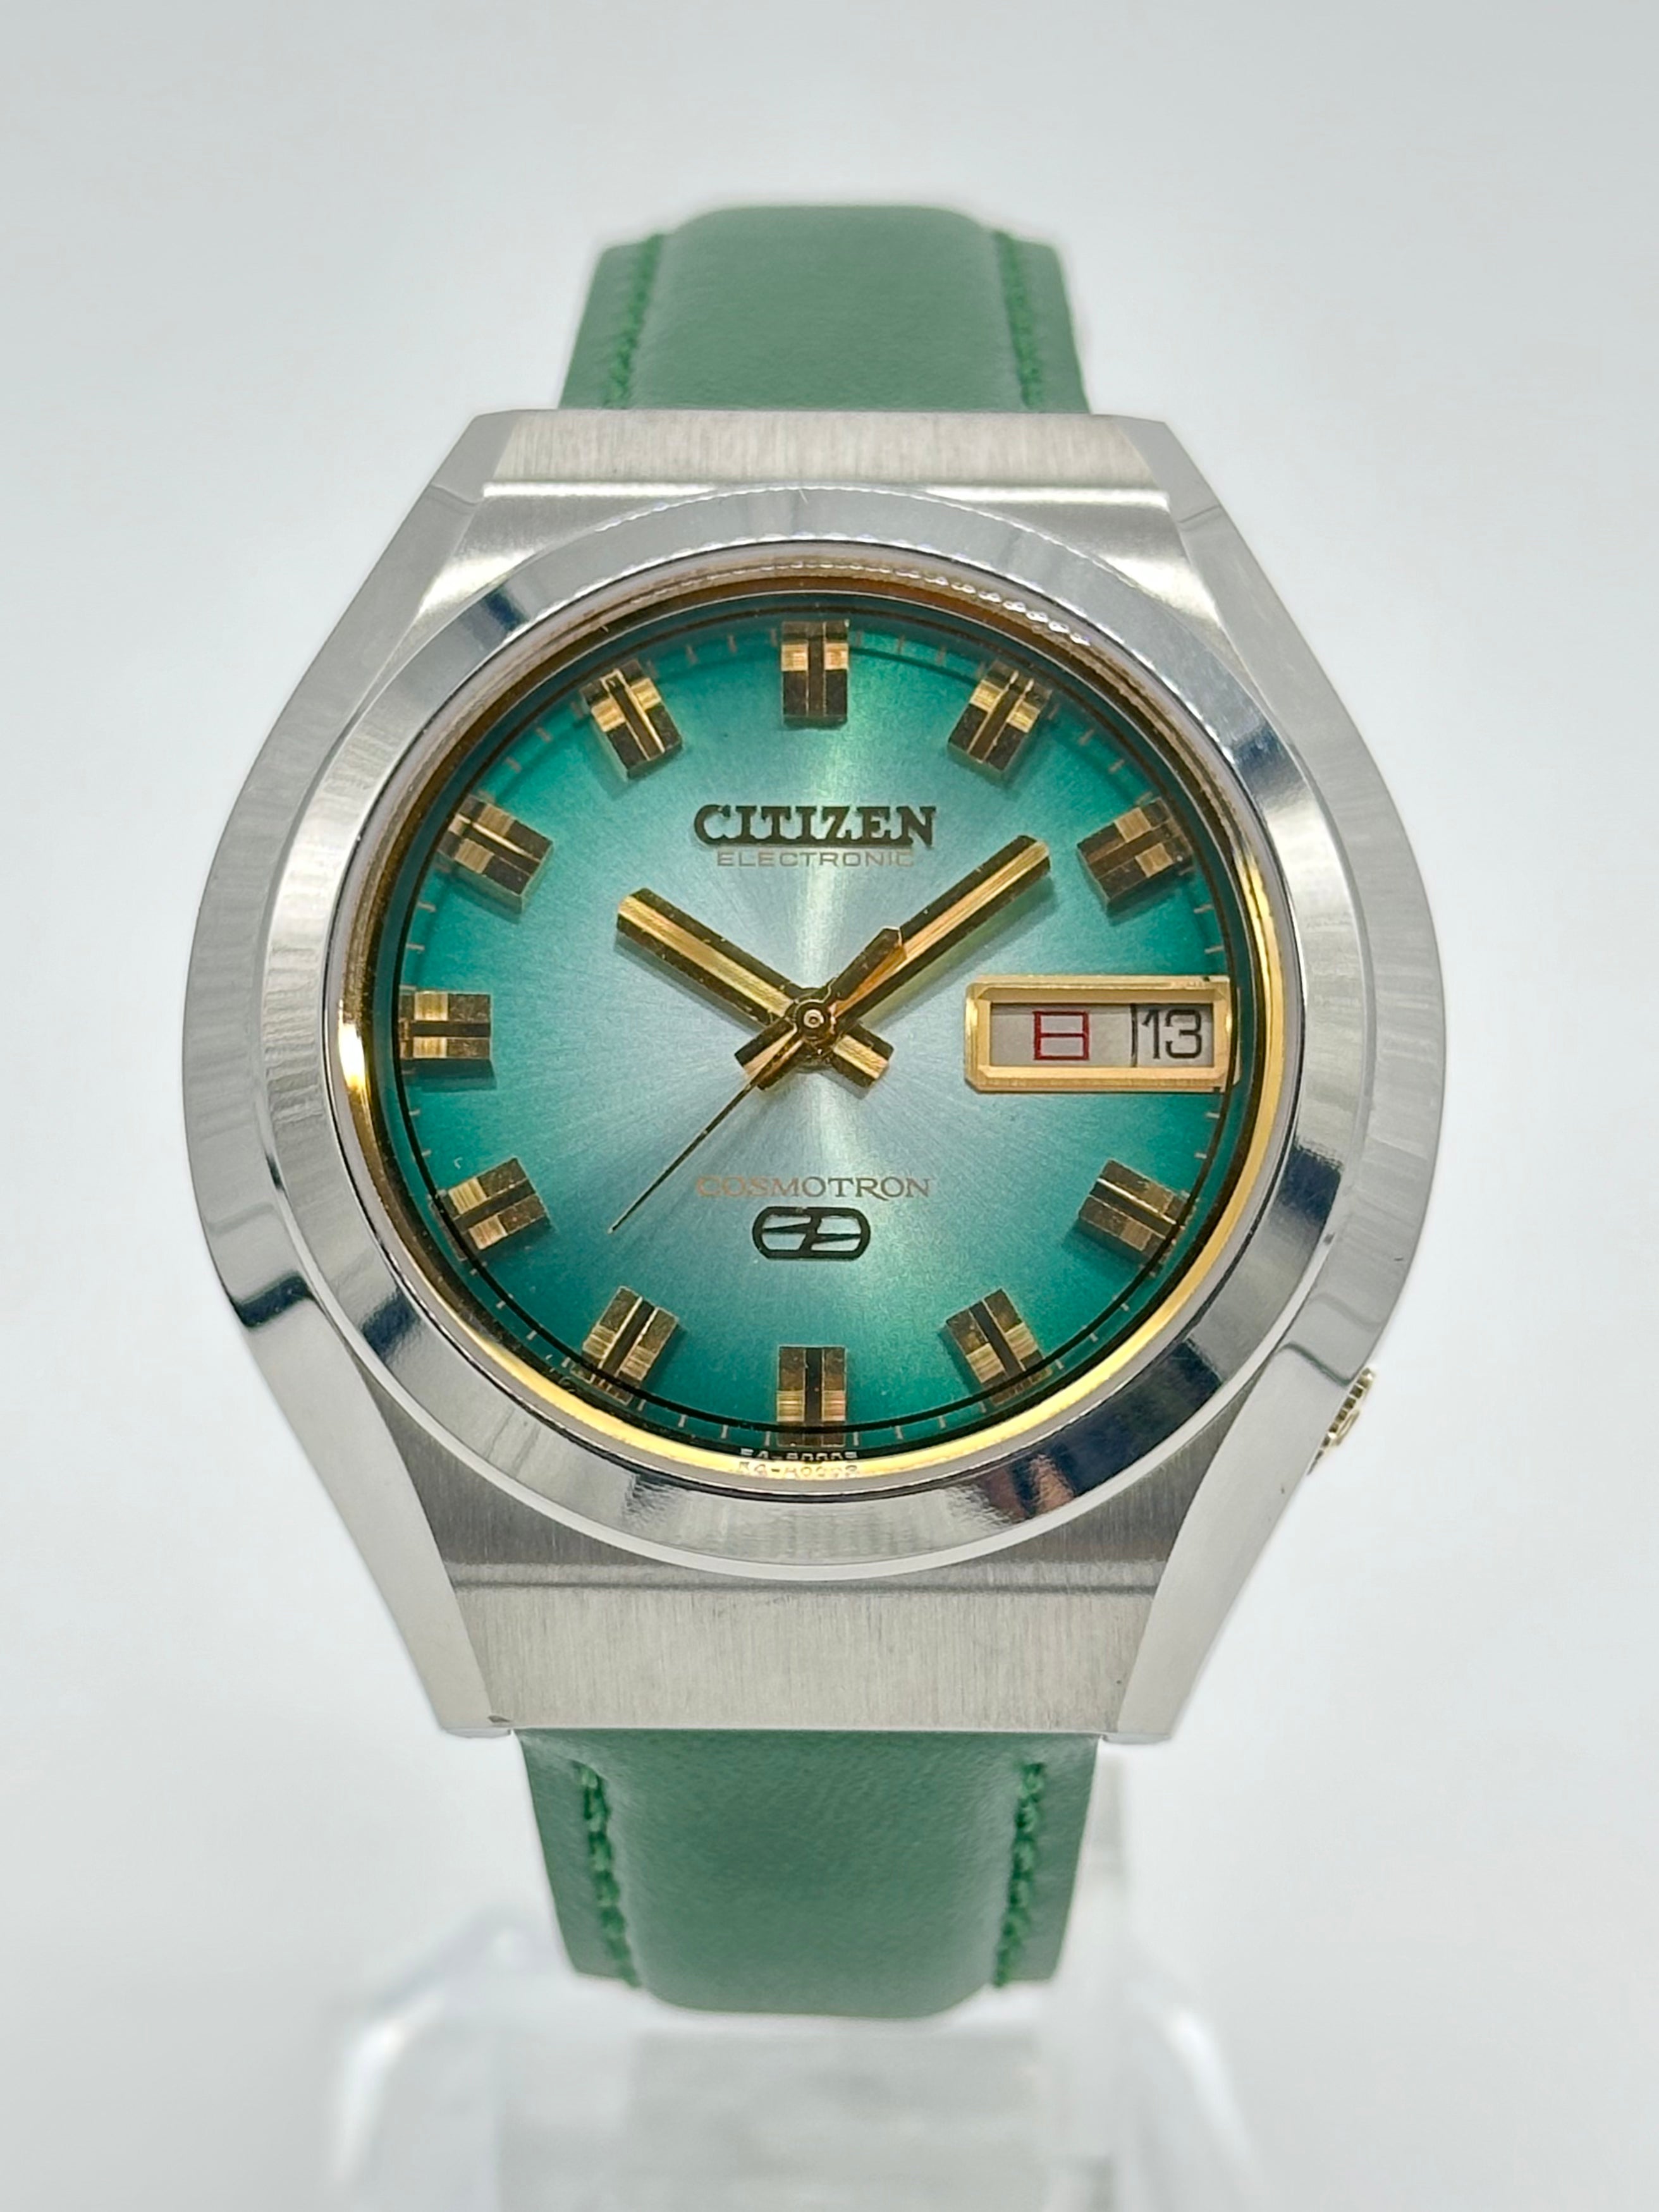 【時計/WATCH】シチズン コスモトロン エレクトリック 緑文字盤 電磁テンプ式 1970年代製